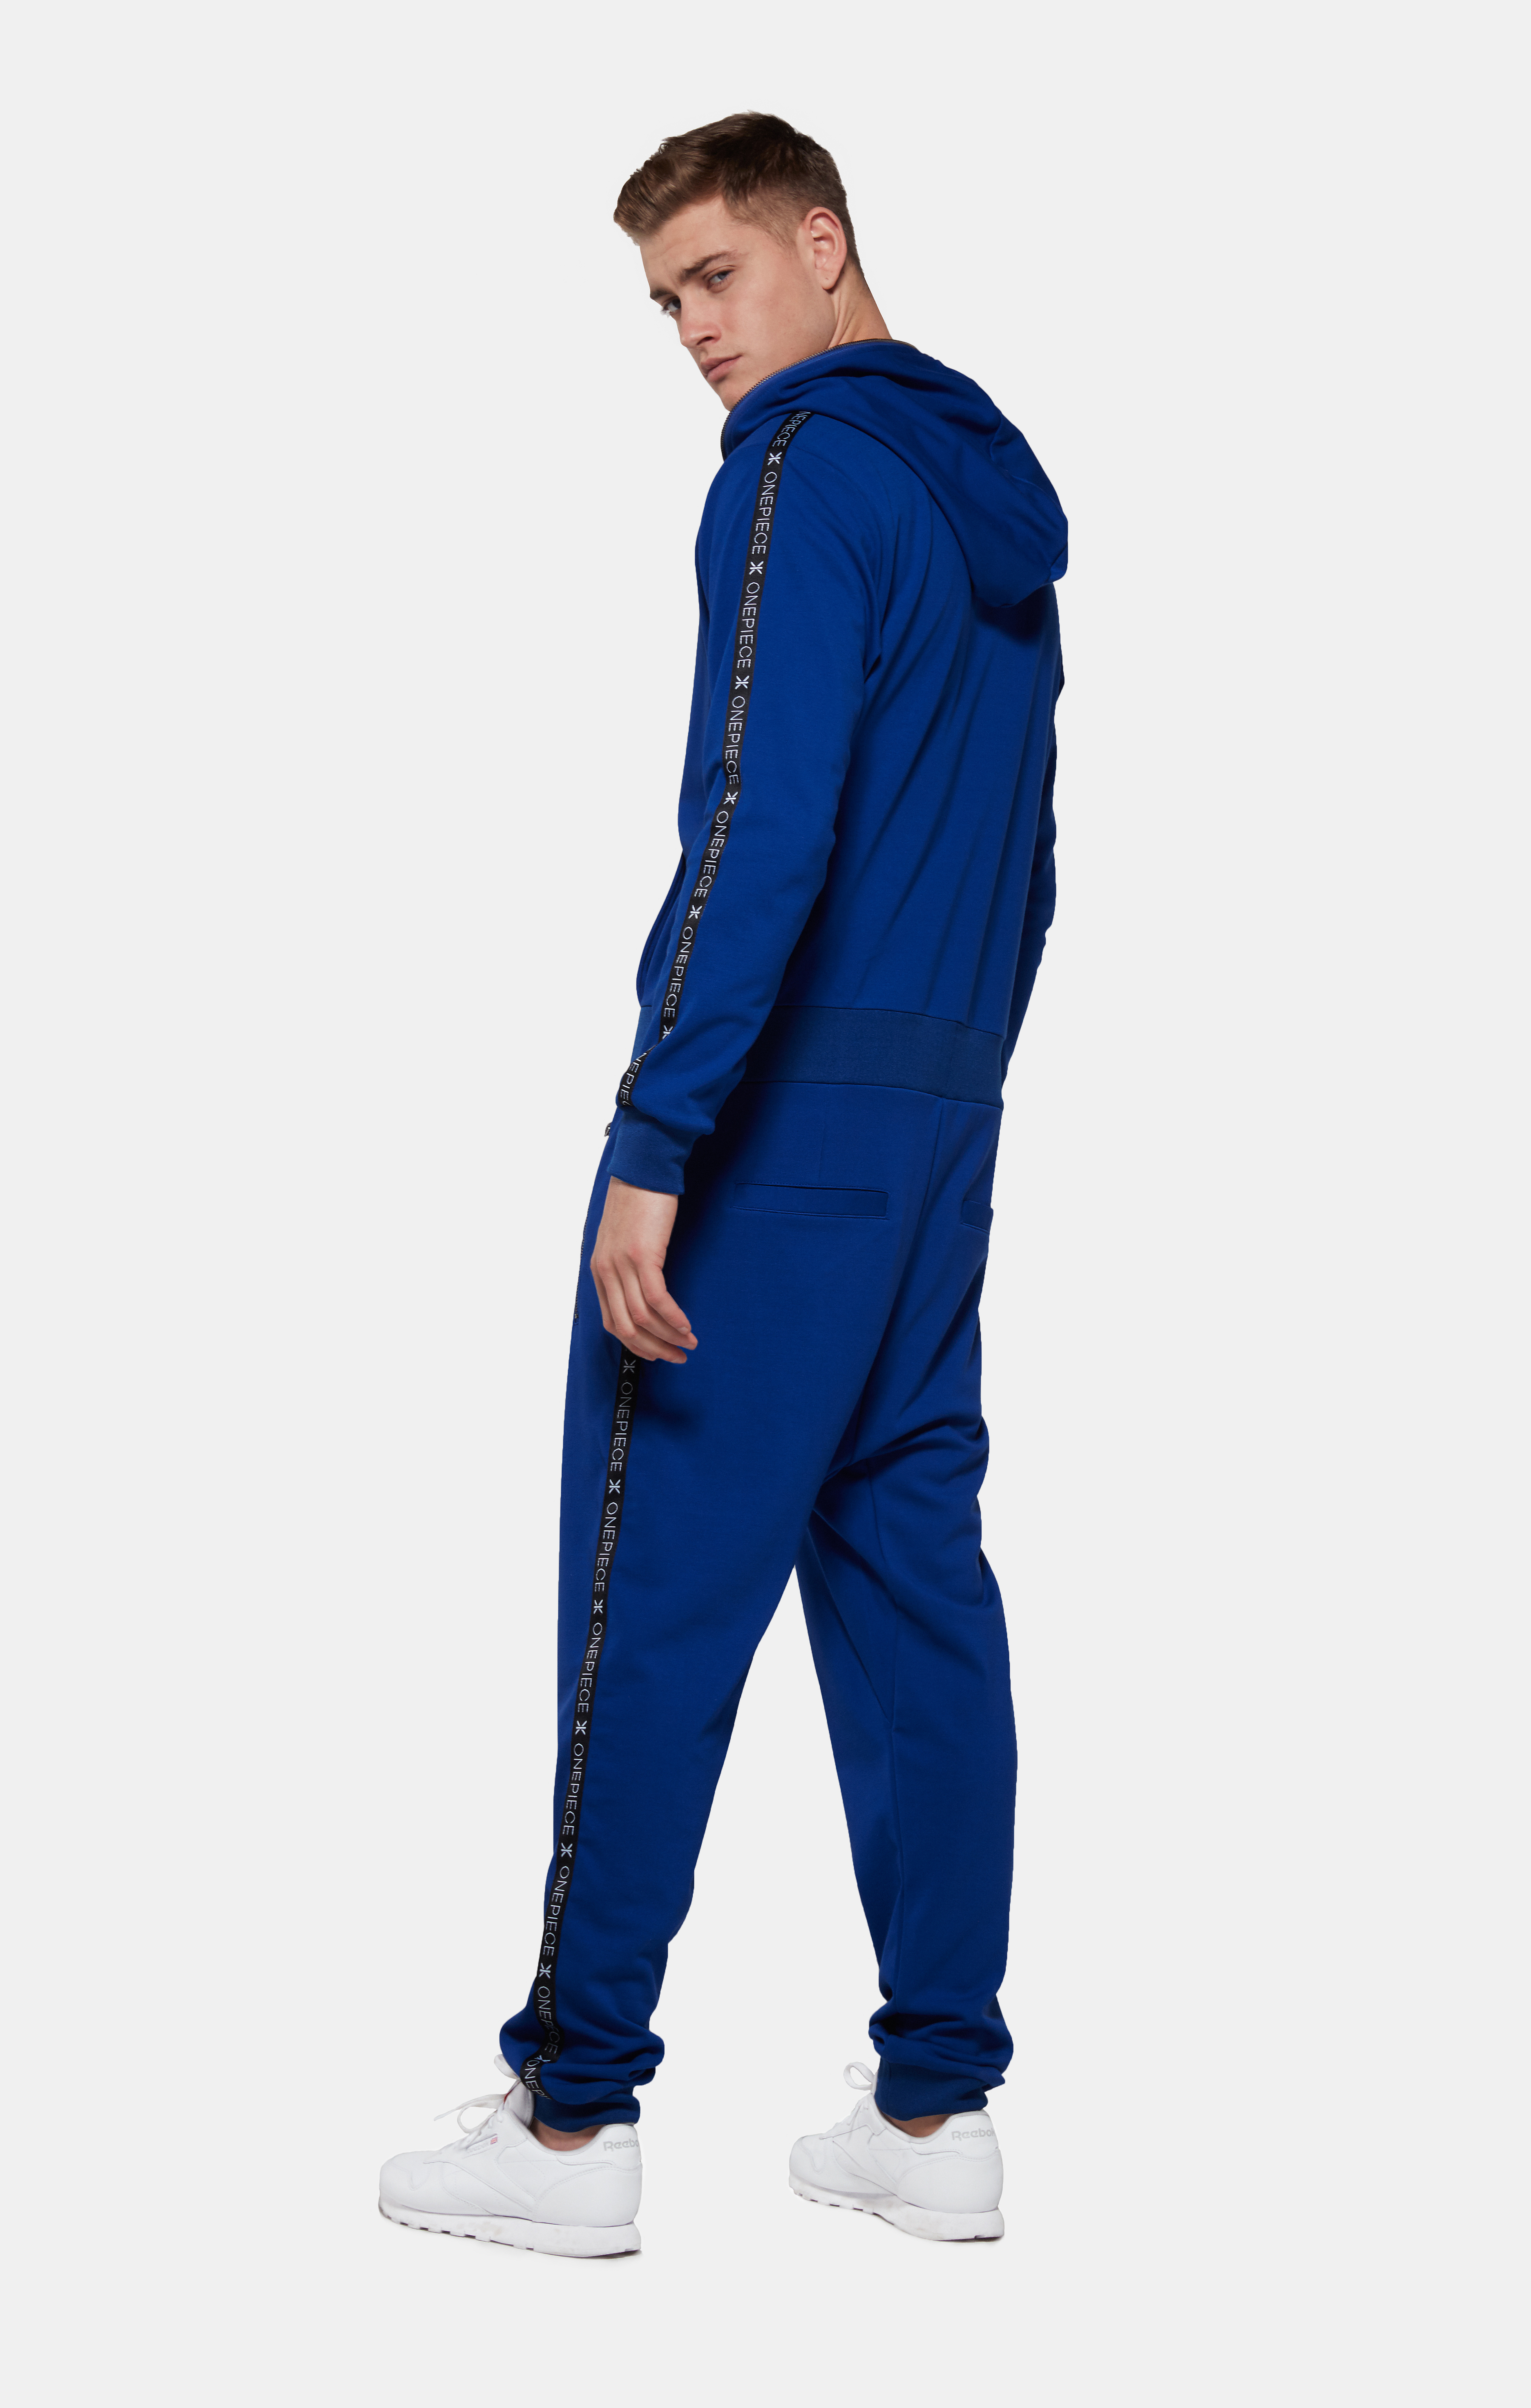 polo jumpsuit blue